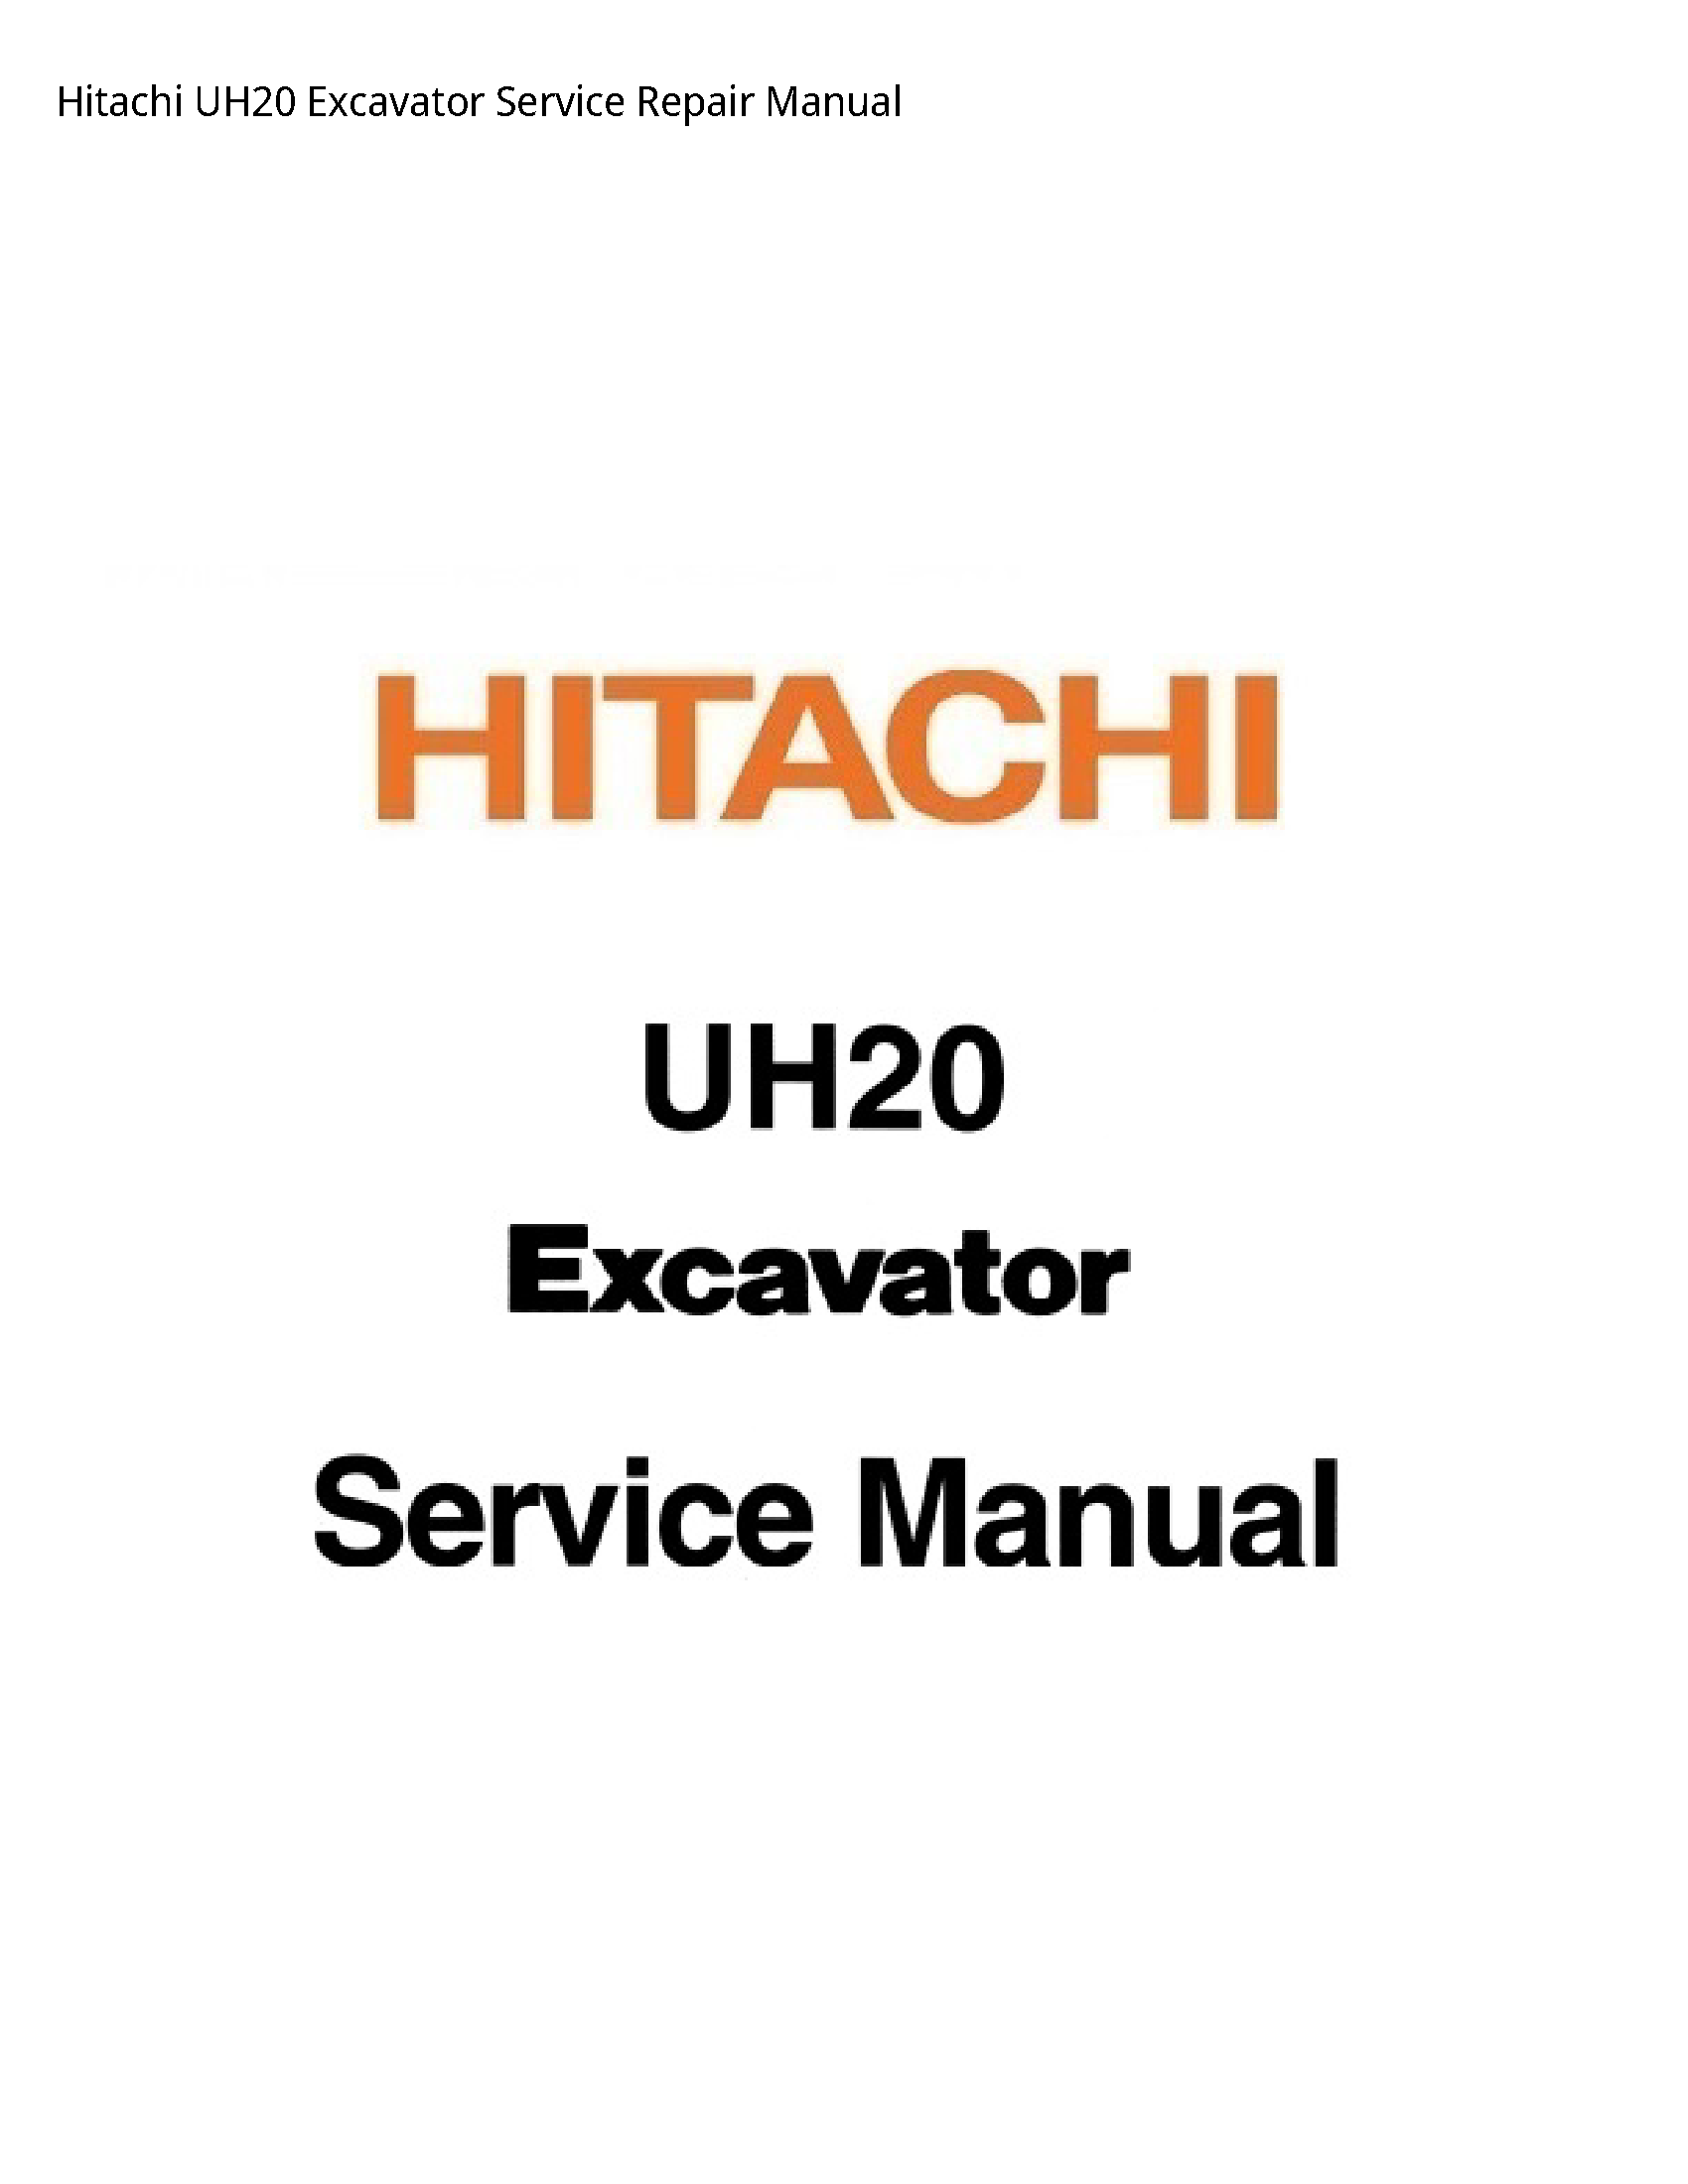 Hitachi UH20 Excavator manual